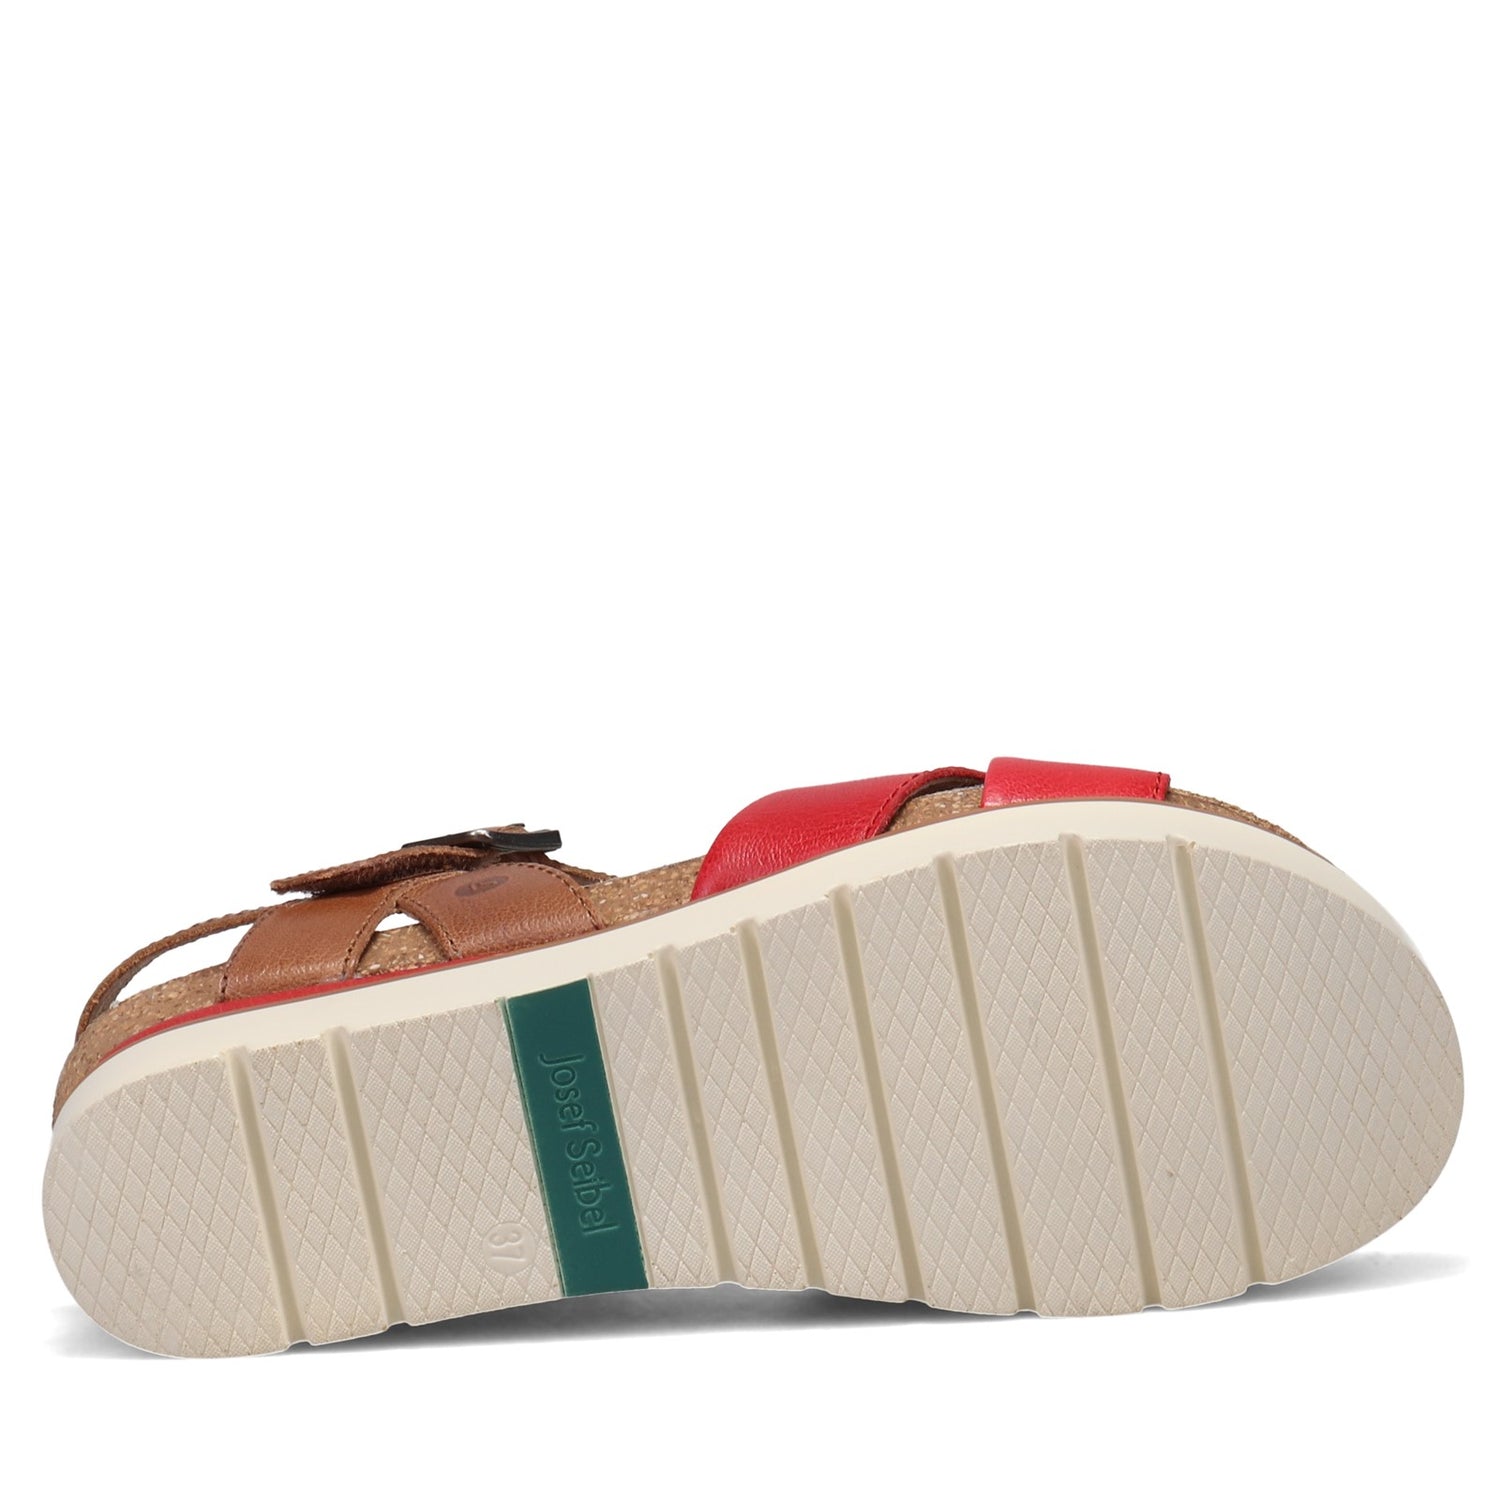 Peltz Shoes  Women's Josef Seibel Clea 10 Sandal RED 72810-128401